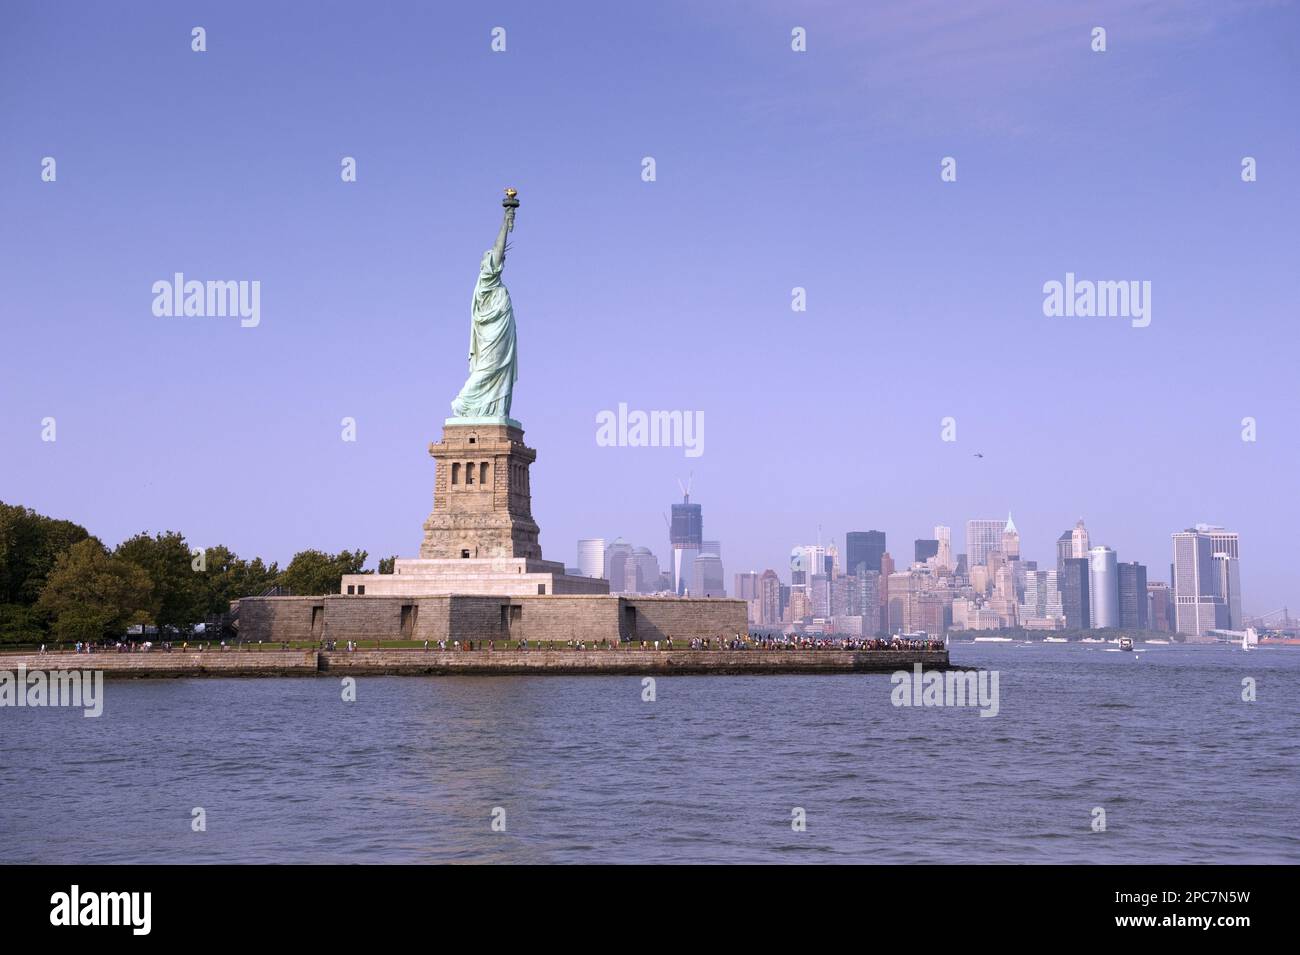 Vue sur la Statue de la liberté, avec les gratte-ciel de Manhattan Island à distance, Liberty Island, New York Harbour, New York City, New York State (U.) S. A. Banque D'Images